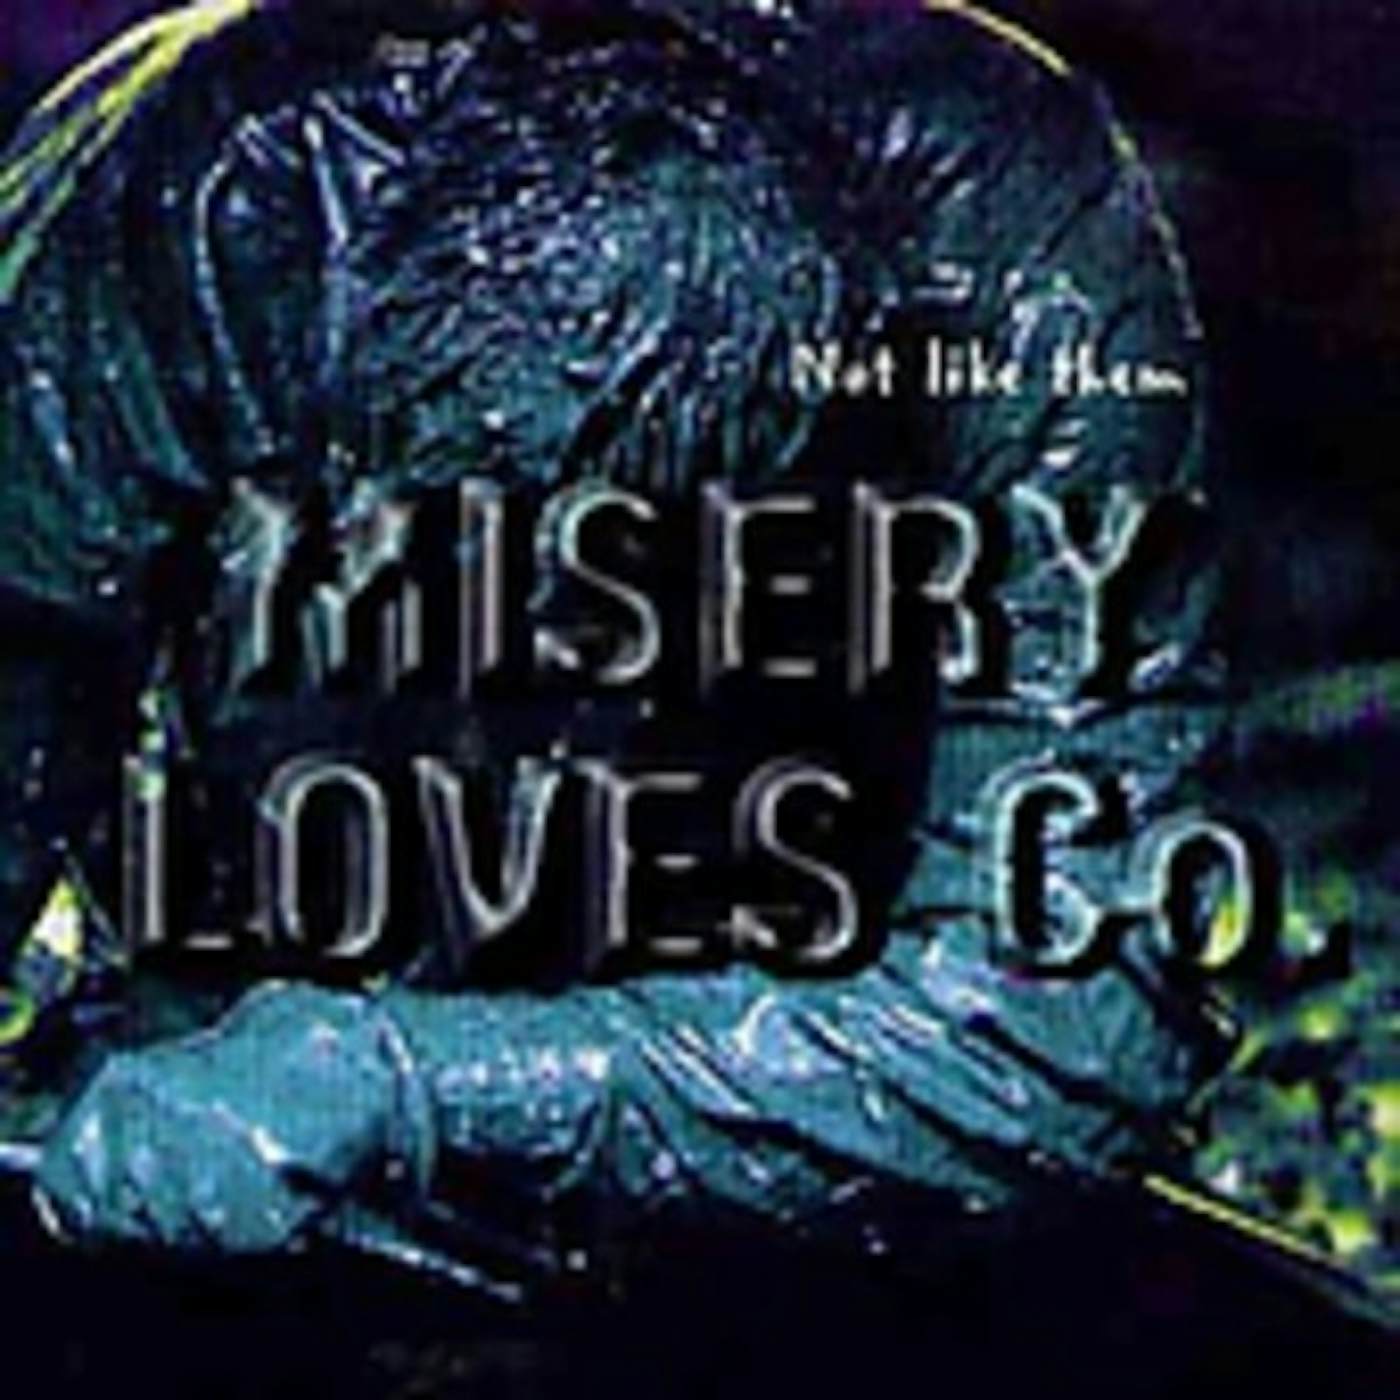 Misery Loves Co. NOT LIKE THEM CD